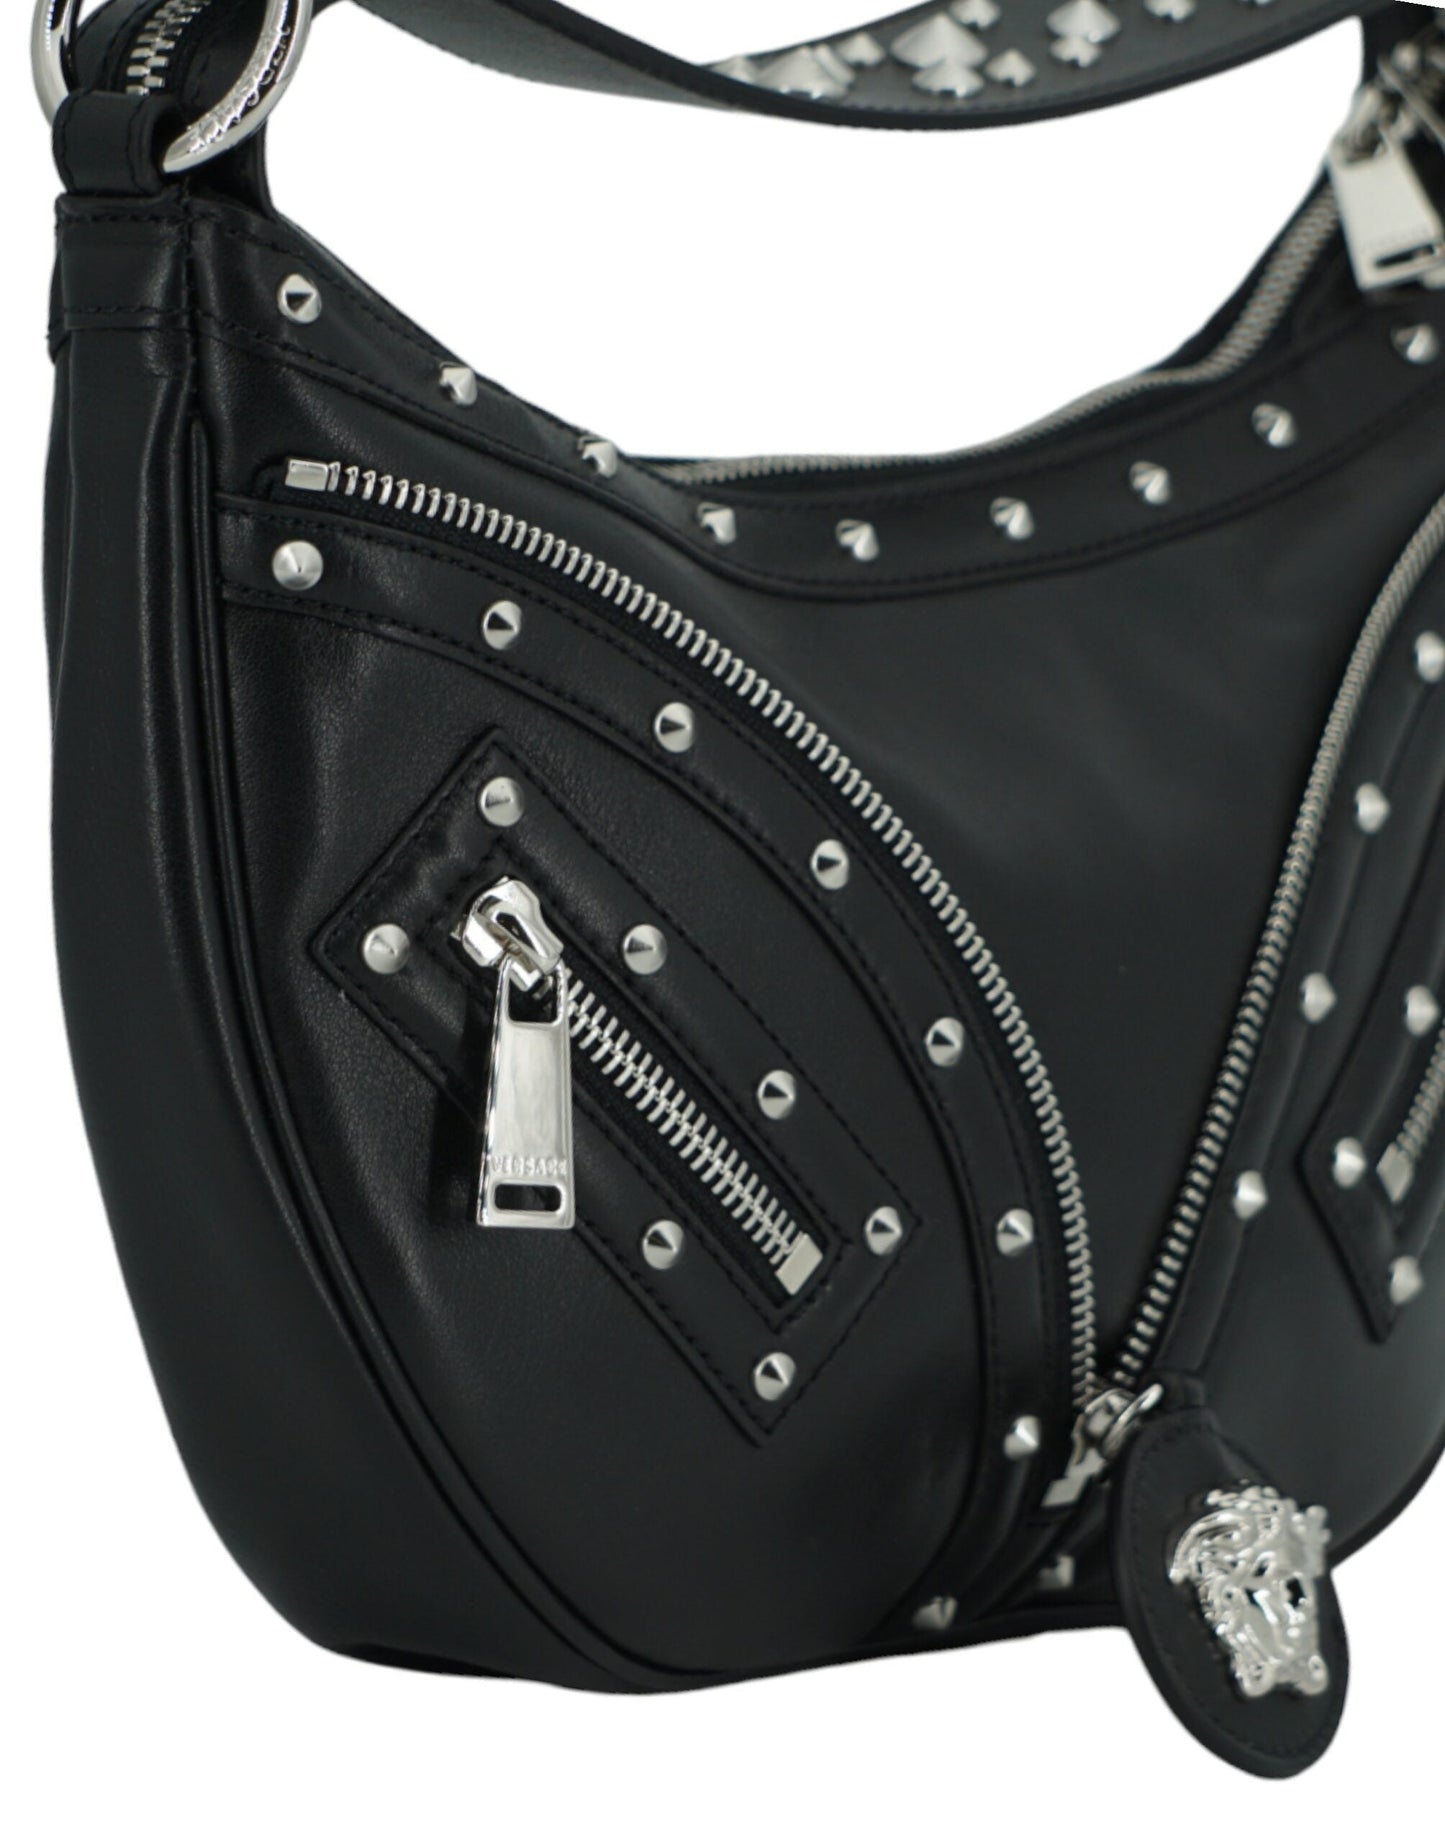 Fashionsarah.com Fashionsarah.com Versace Black Calf Leather Small Hobo Shoulder Bag